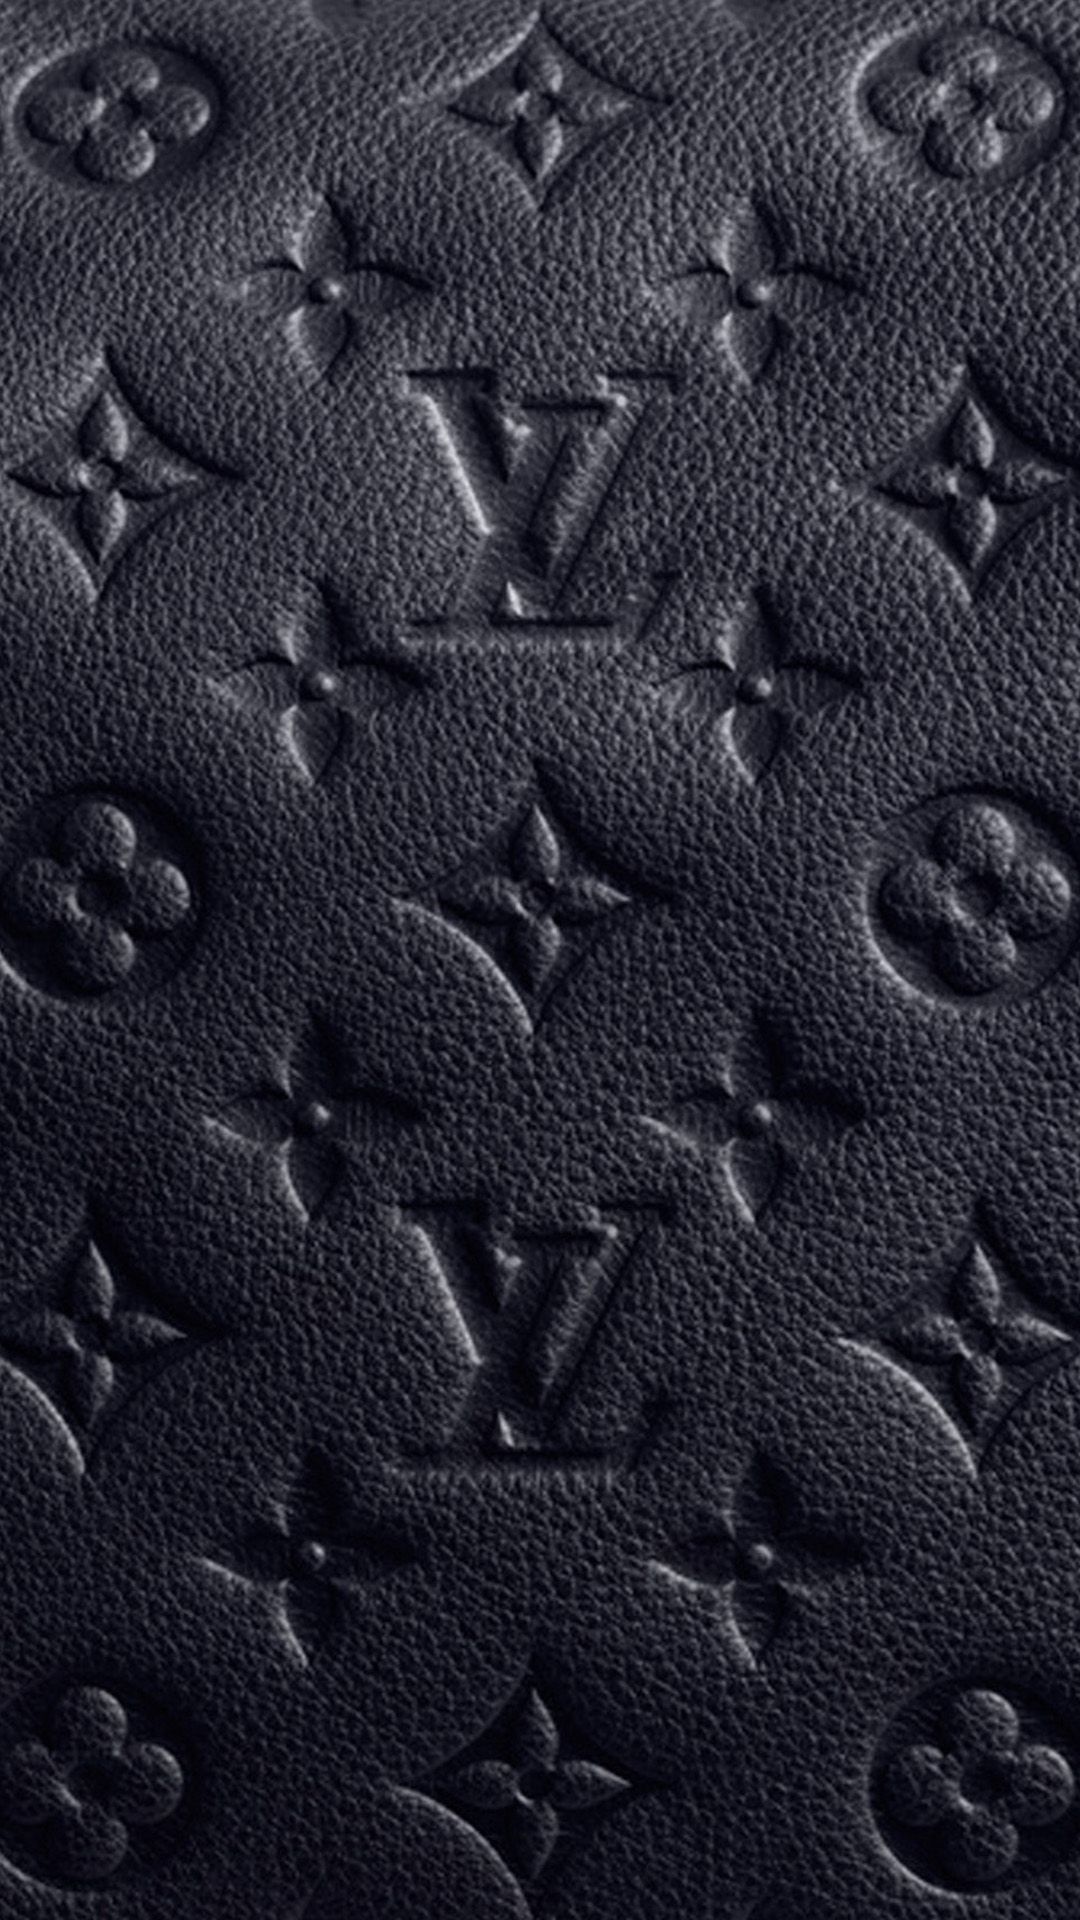 Hình nền LV đen sẽ mang lại cho bạn sự đẳng cấp và tinh tế. Chỉ cần nhìn qua những bức ảnh này, bạn đã có thể cảm nhận được sức mạnh của màu sắc truyền thống của Louis Vuitton đấy.